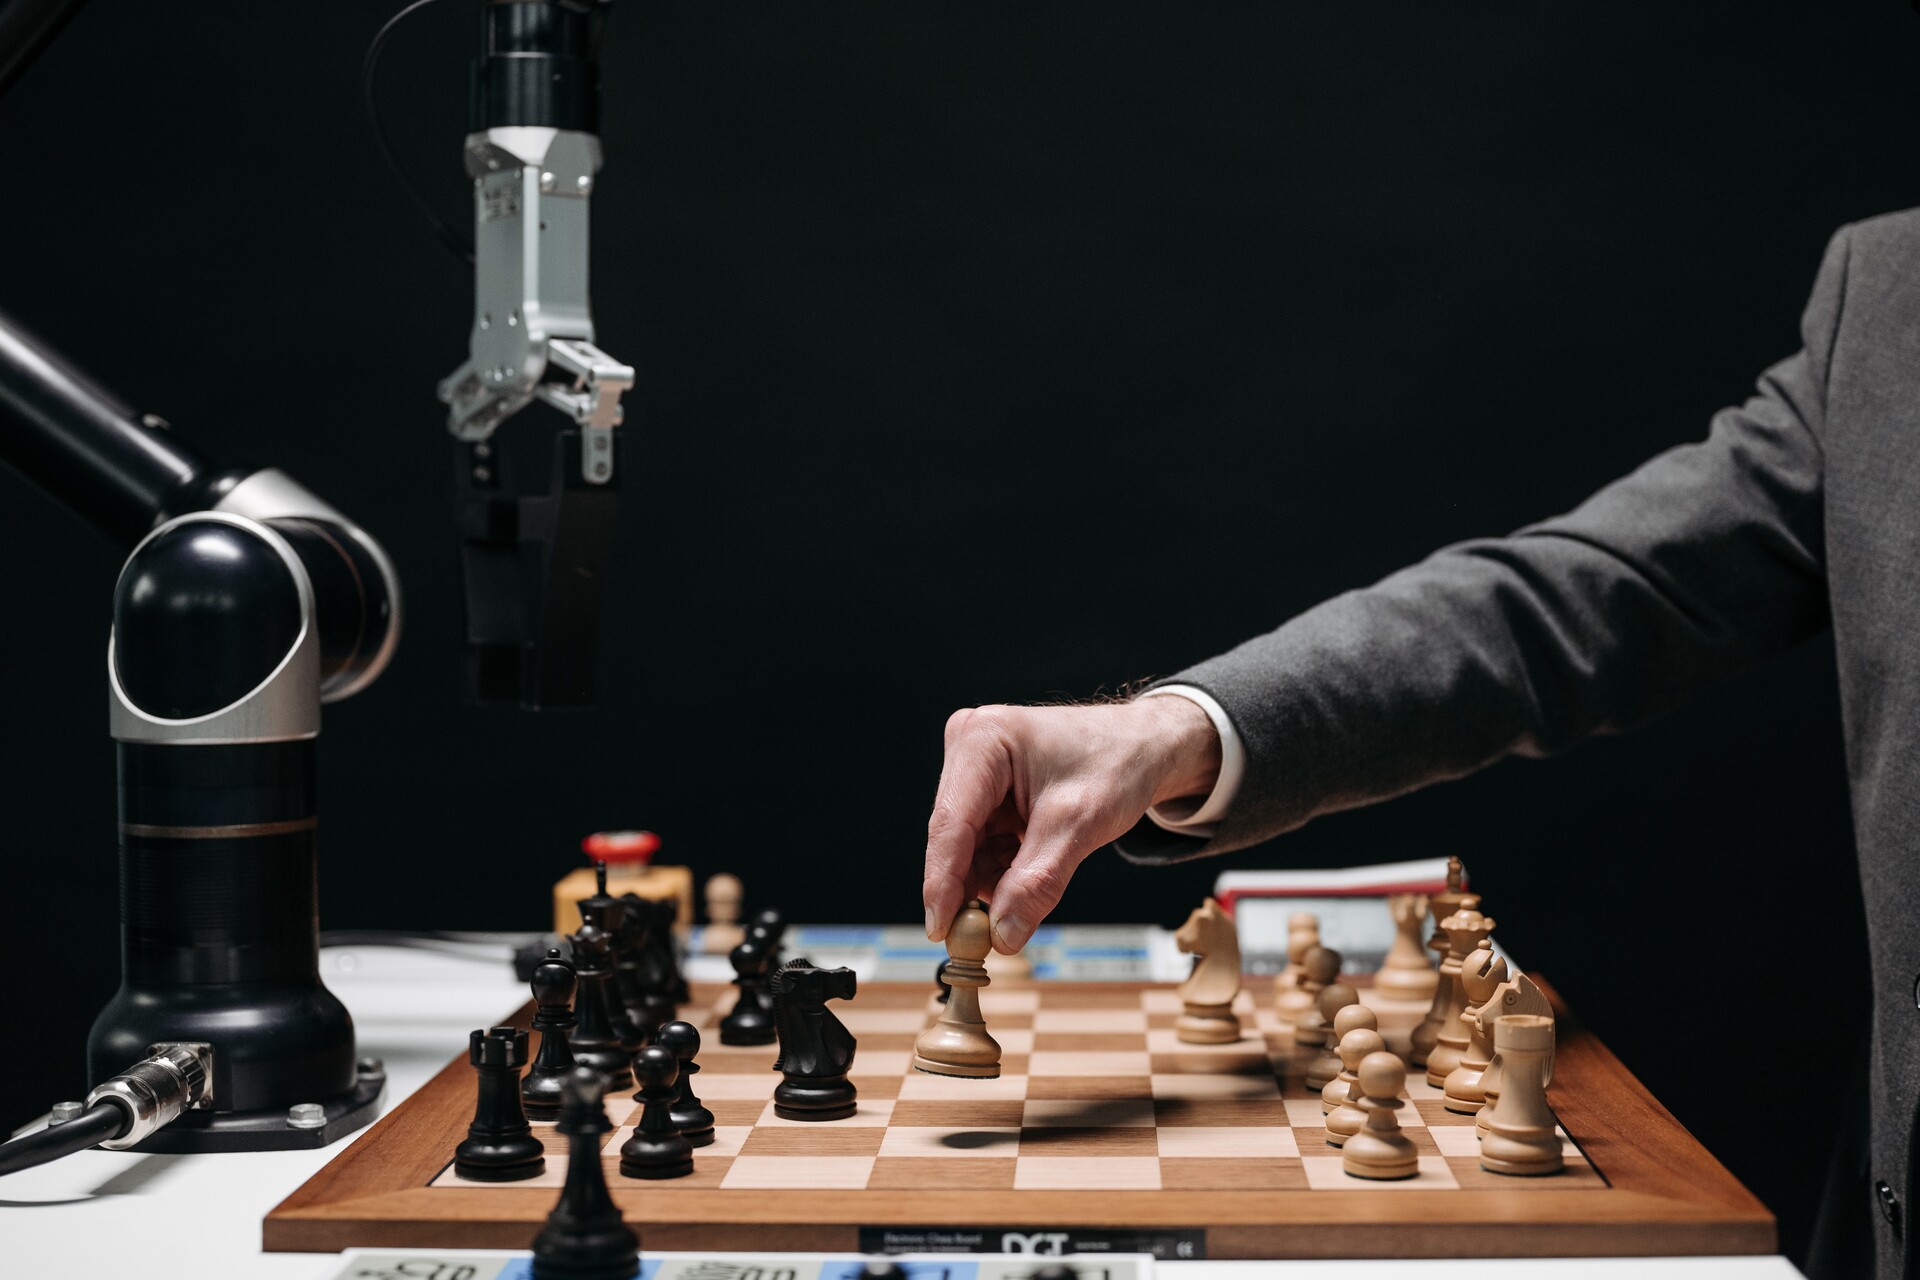 Futuro del lavoro: un uomo si scontra con una mano robotica in una partita di scacchi, un'interessante combinazione tra intelligenza umana e artificiale nel gioco strategico più antico e cerebrale del mondo